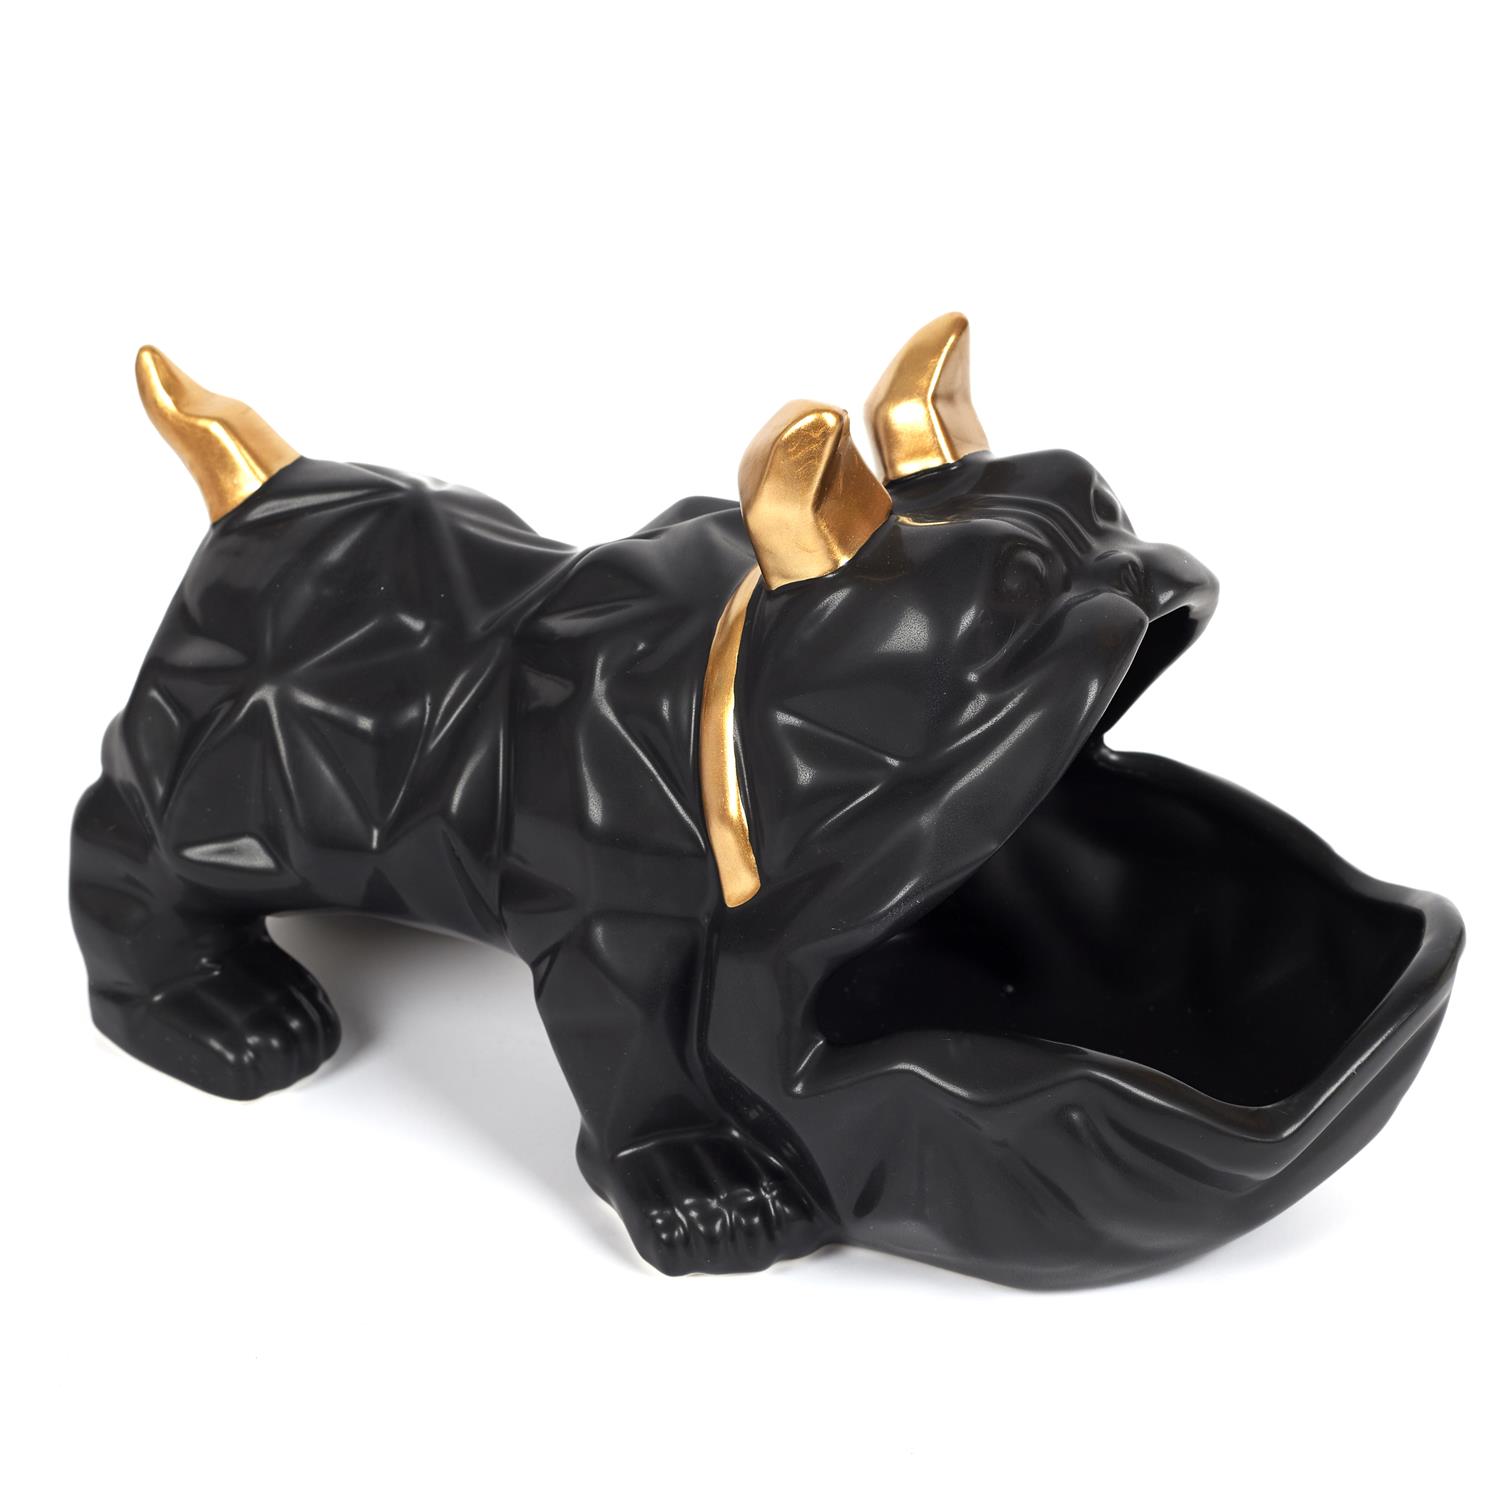 sculpture-ceramique-bulldog-noir-vide-poche-organisateur-entree